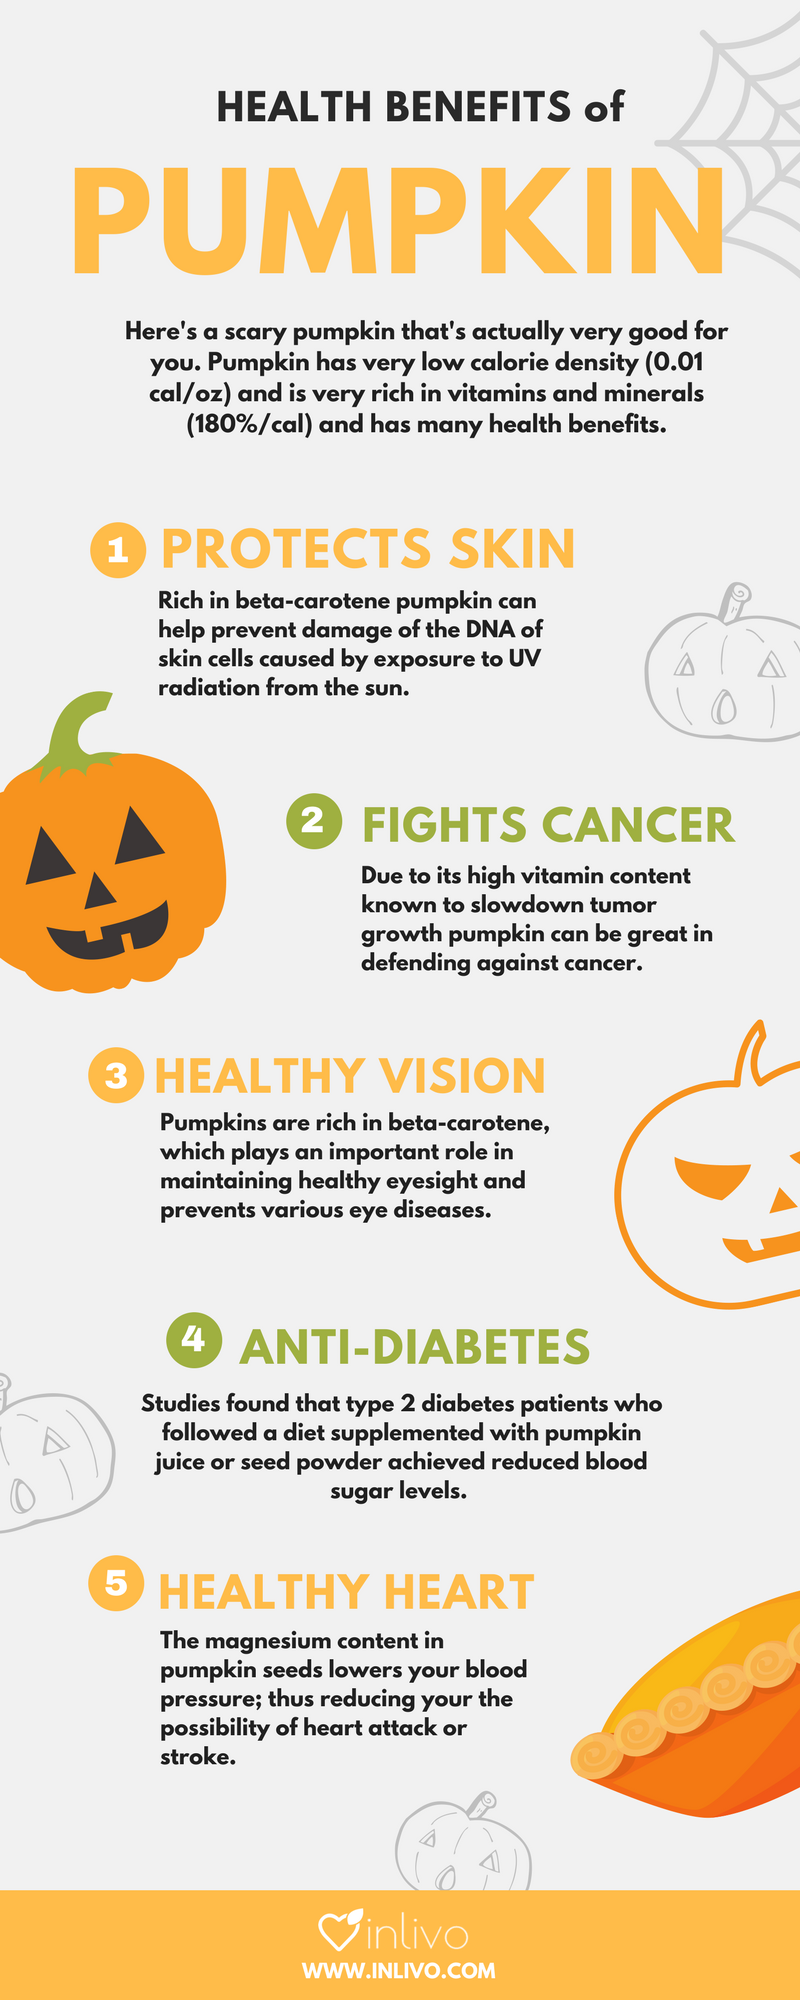 inlivo-blog-health-benefits-of-pumpkin-halloween-infographic